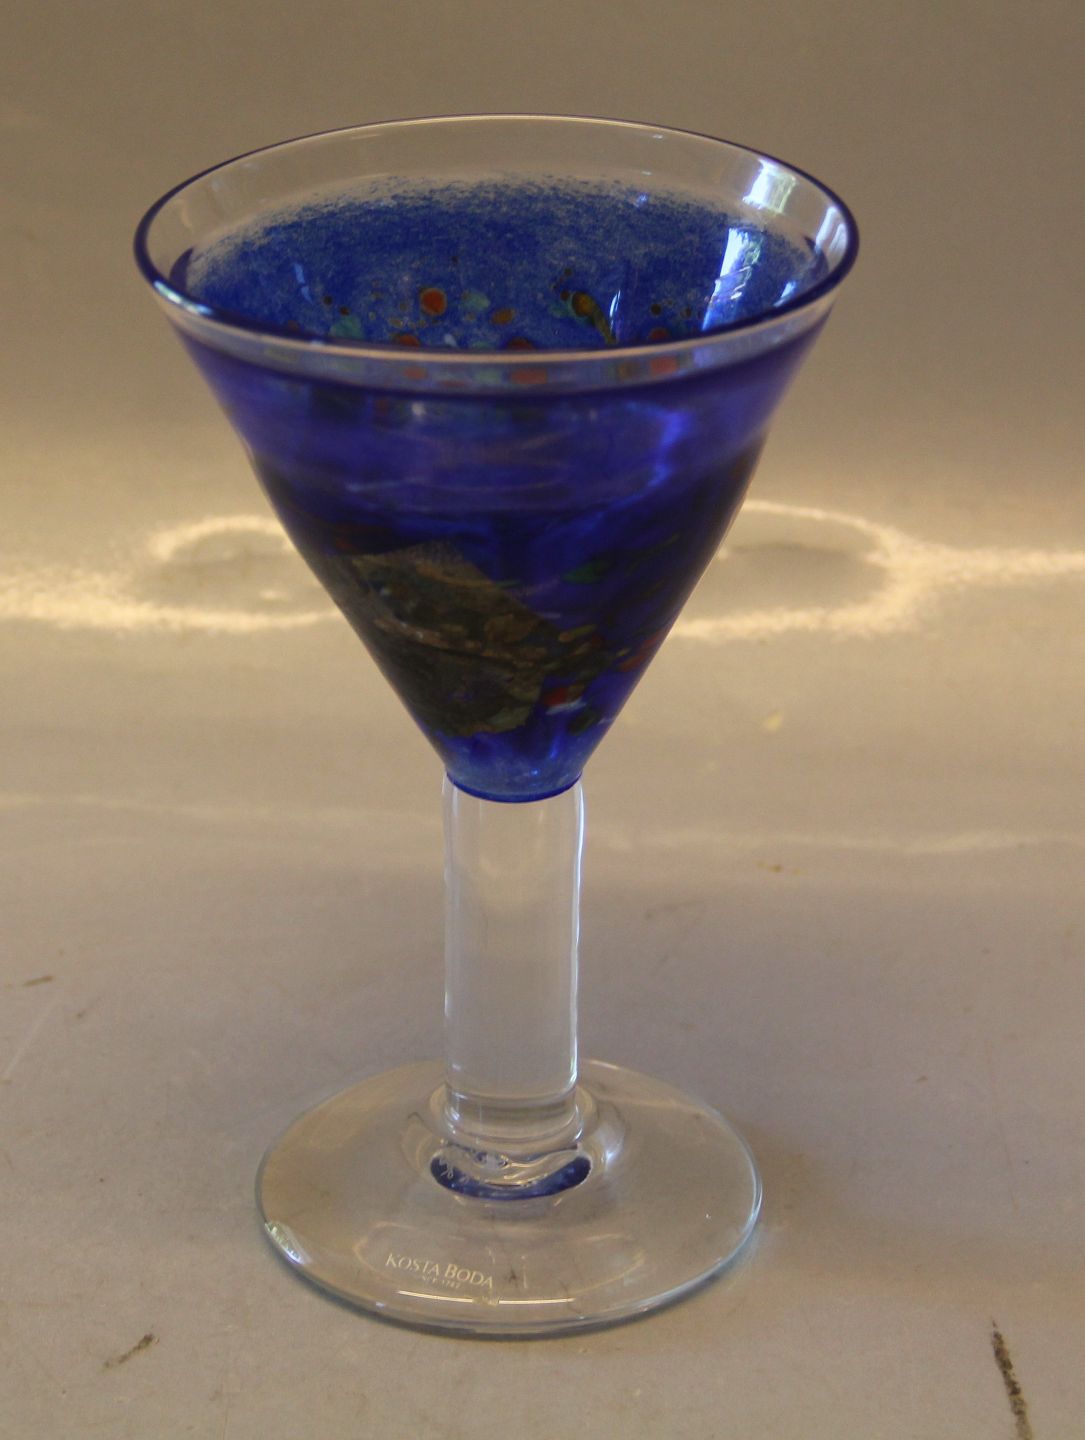 Klosterkælderen - Kosta Boda Blå Satellite Cocktail Glas 17.8 cm VALLIEN, * - Kosta Boda Blå Satellite Cocktail Glas 17.8 cm BERTIL VALLIEN, *